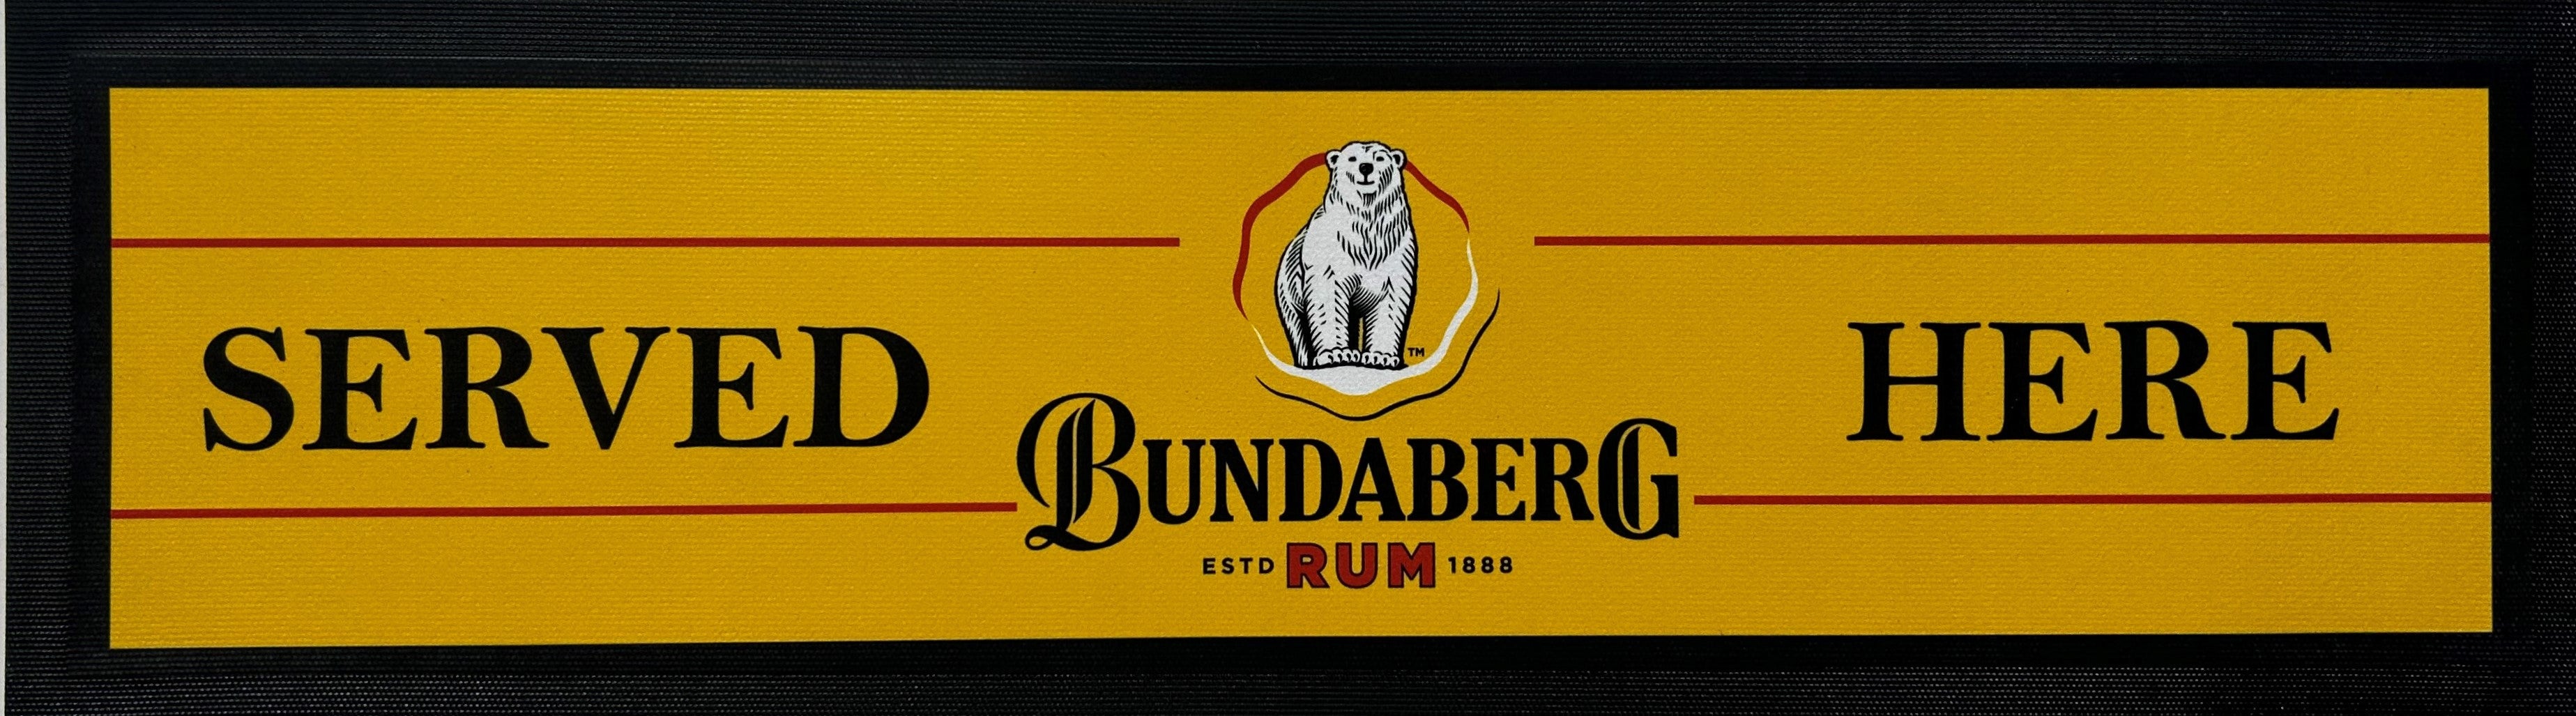 Bundaberg Rum Gold Premium Rubber-Backed Bar Runner - KING CAVE